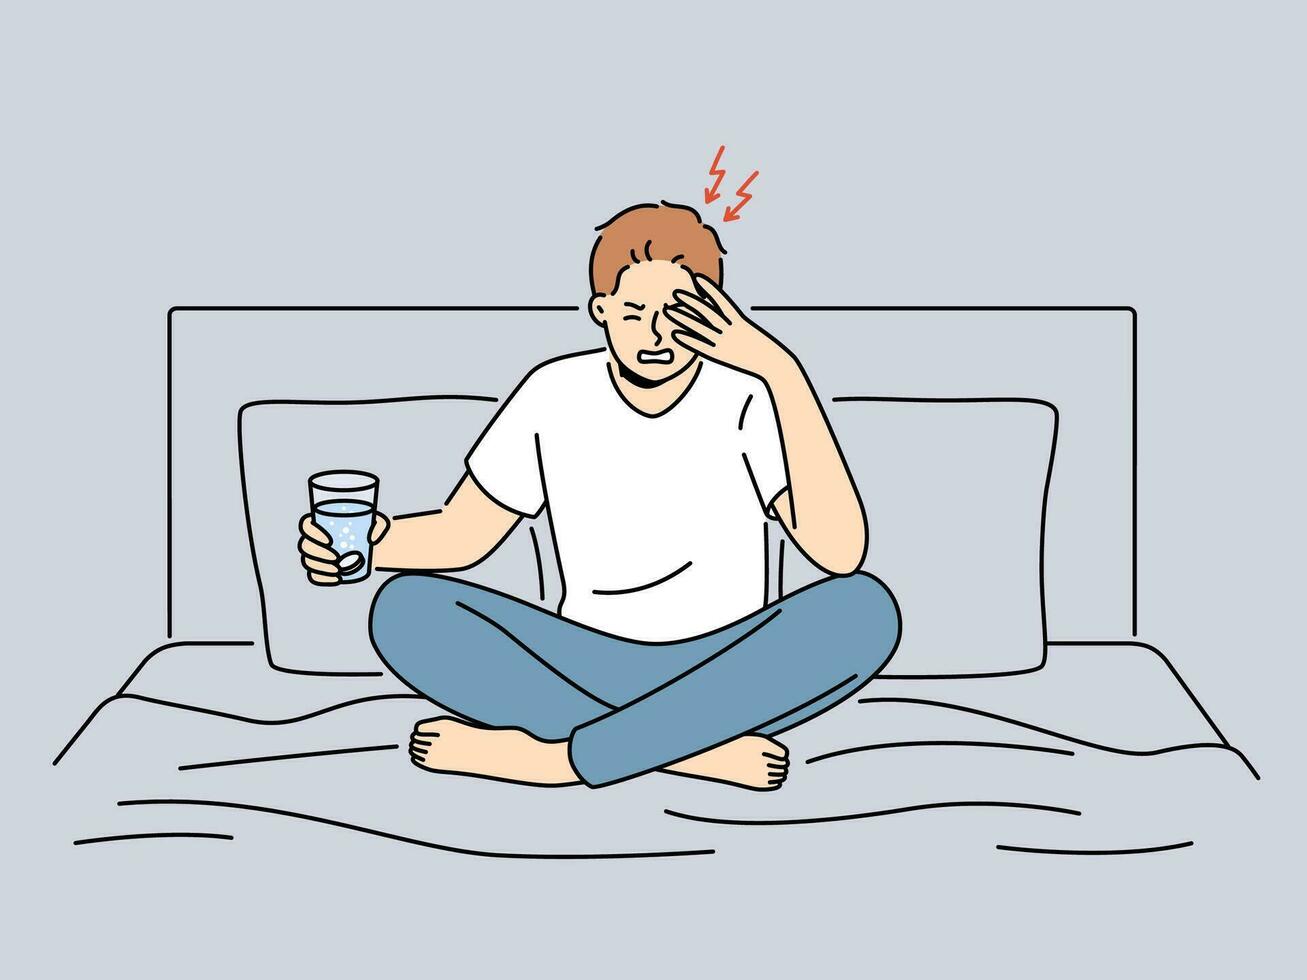 ungesund Mann sitzen auf Bett leiden von Migräne halten Glas von Wasser mit Pille. nicht wohl Kerl Kampf mit Kopfschmerzen von Kater nehmen Schmerzmittel Medikament. Vektor Illustration.